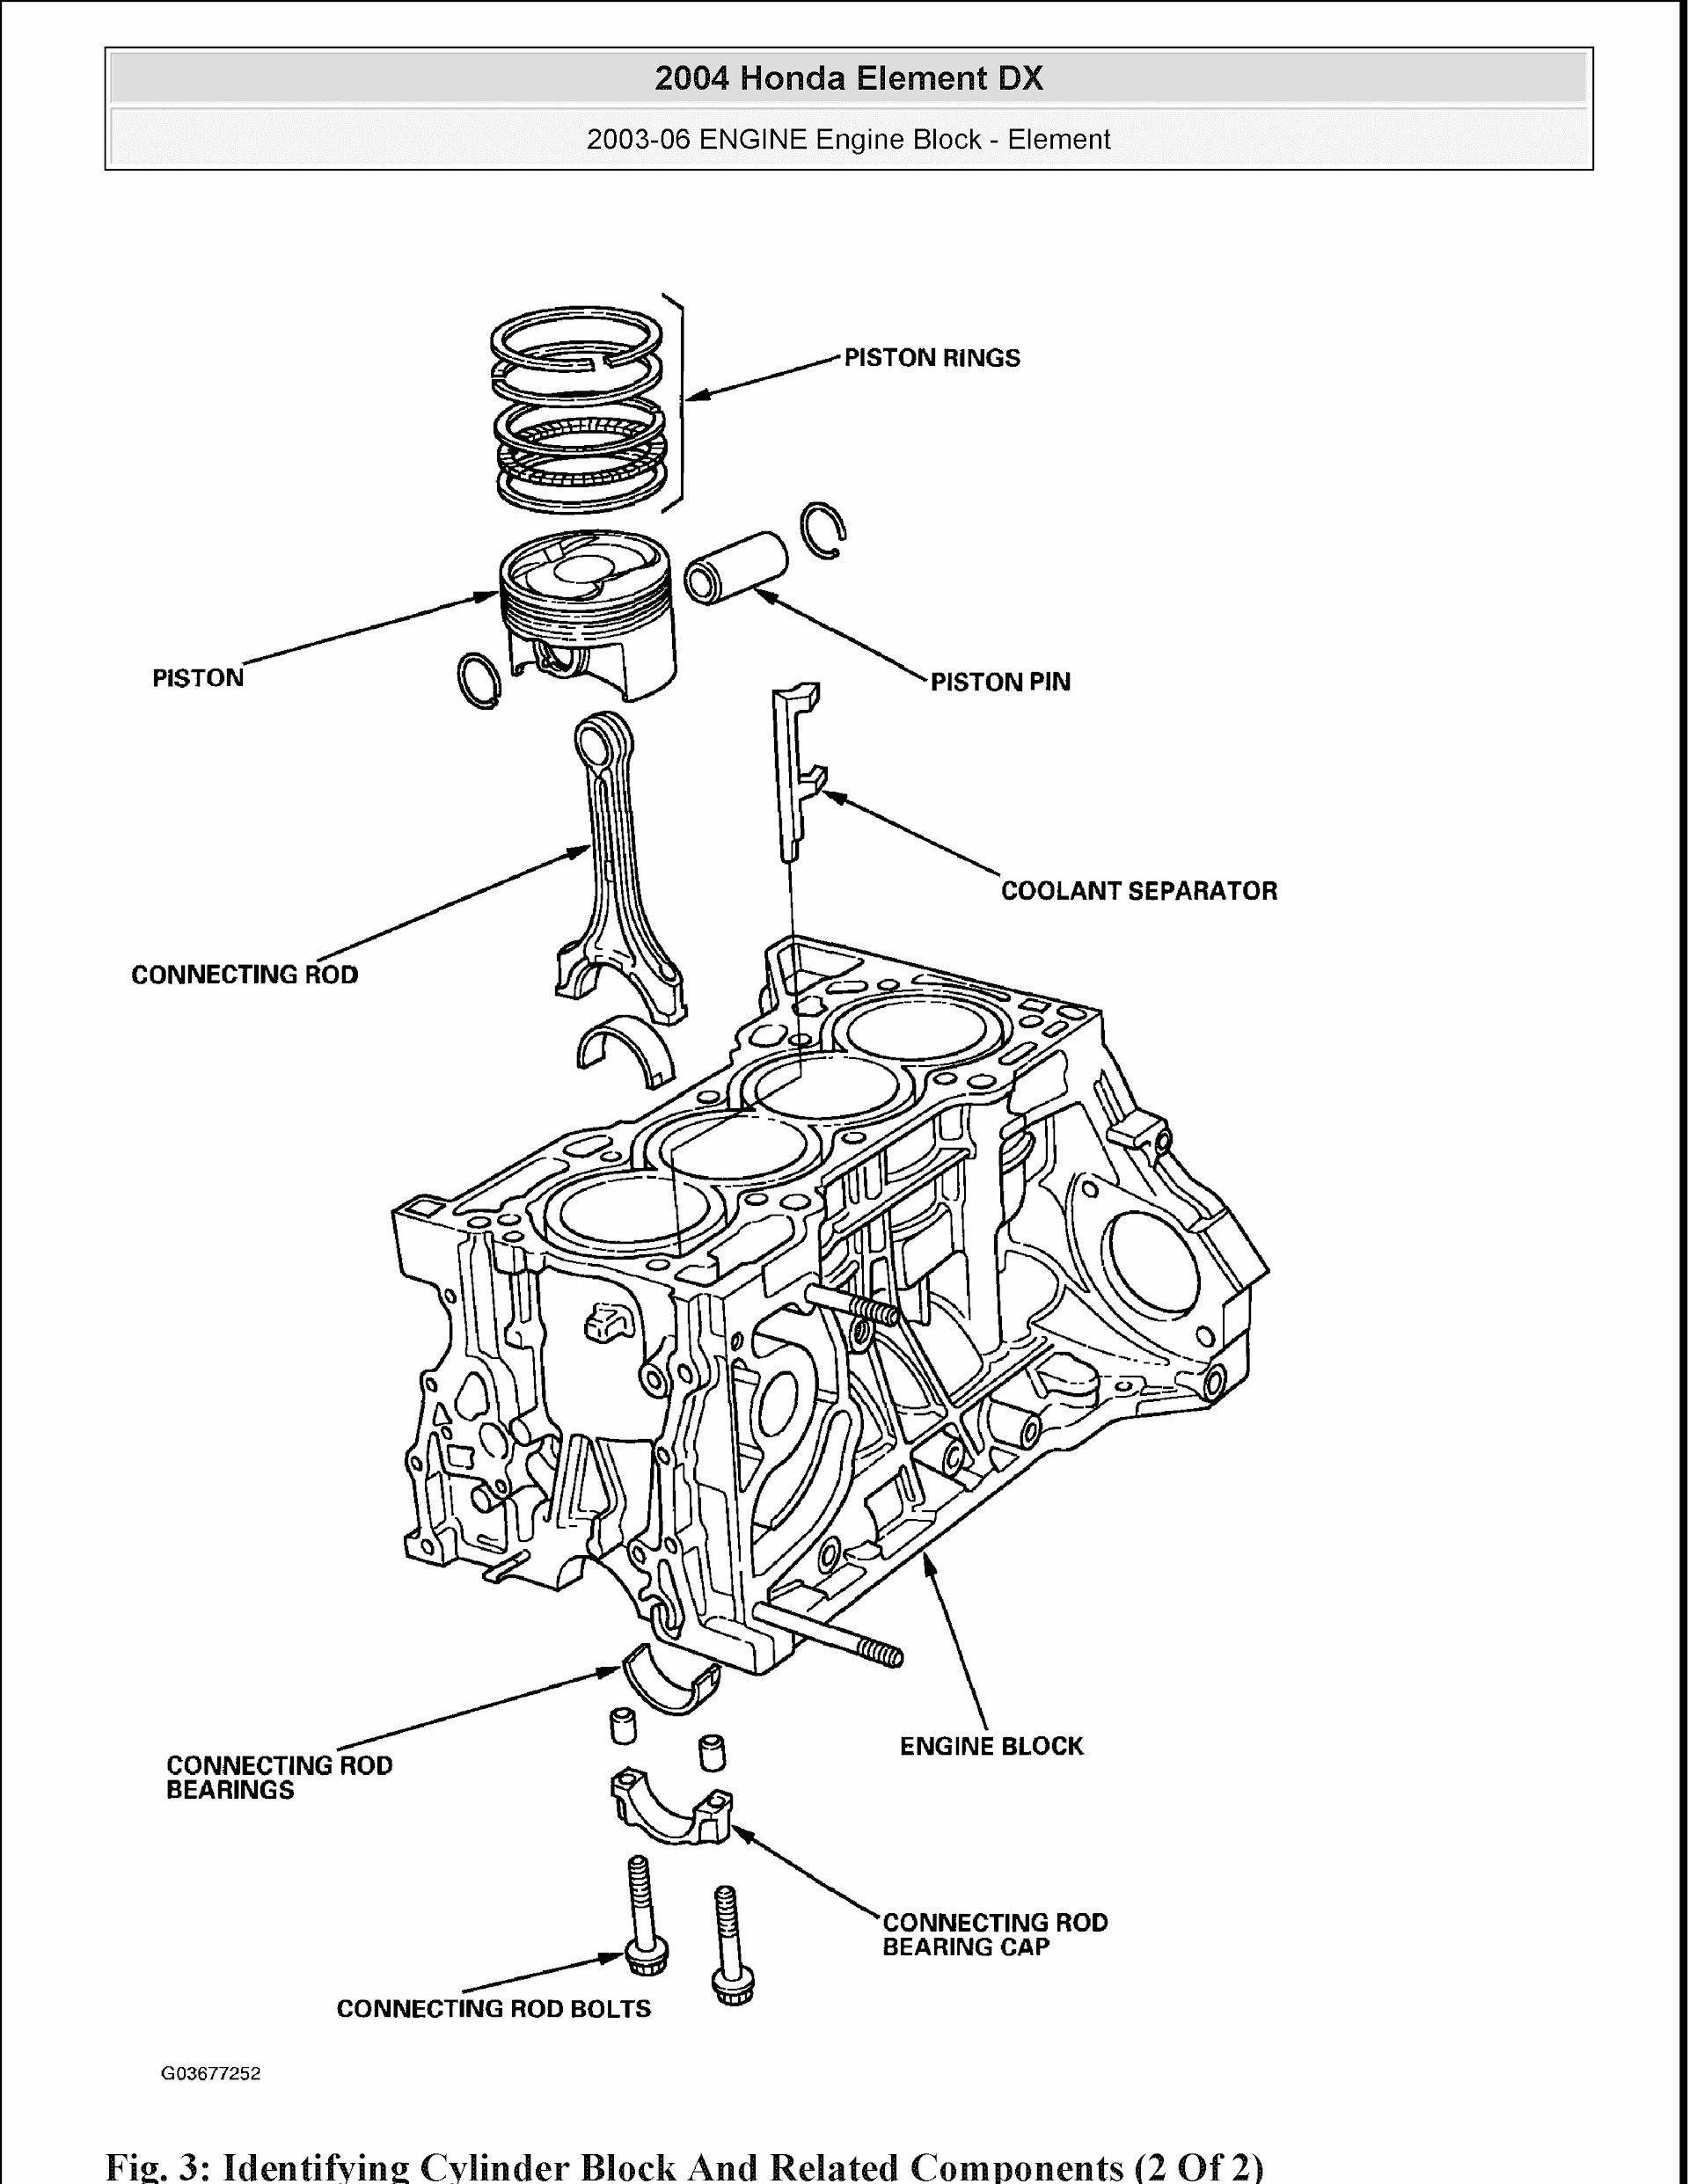 2008 Honda Element Repair Manual, Engine Mechanical